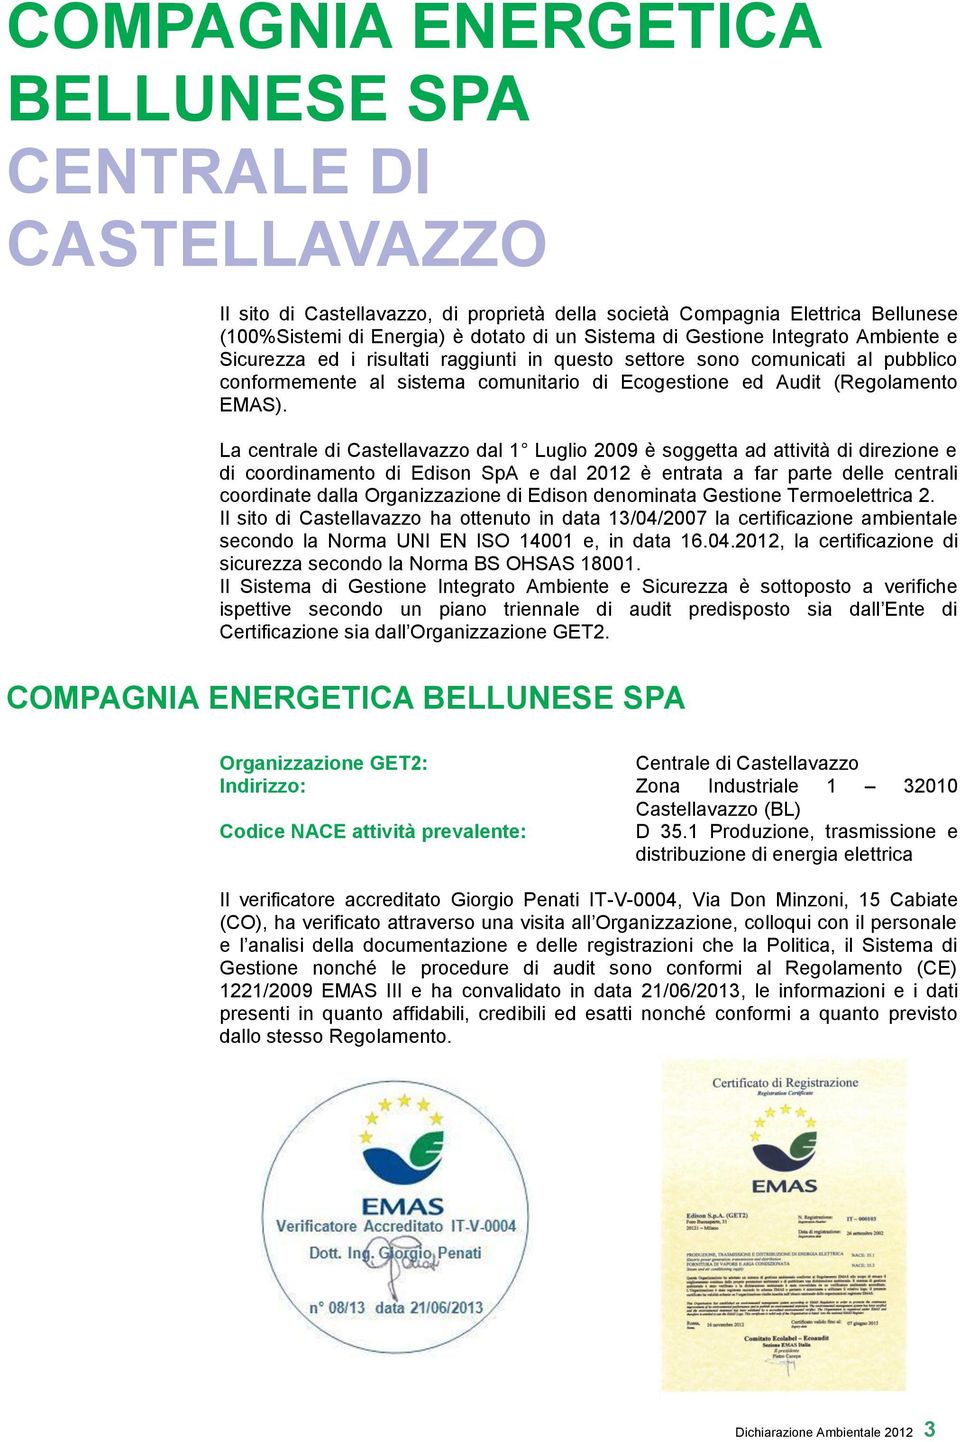 La centrale di Castellavazzo dal 1 Luglio 2009 è soggetta ad attività di direzione e di coordinamento di Edison SpA e dal 2012 è entrata a far parte delle centrali coordinate dalla Organizzazione di